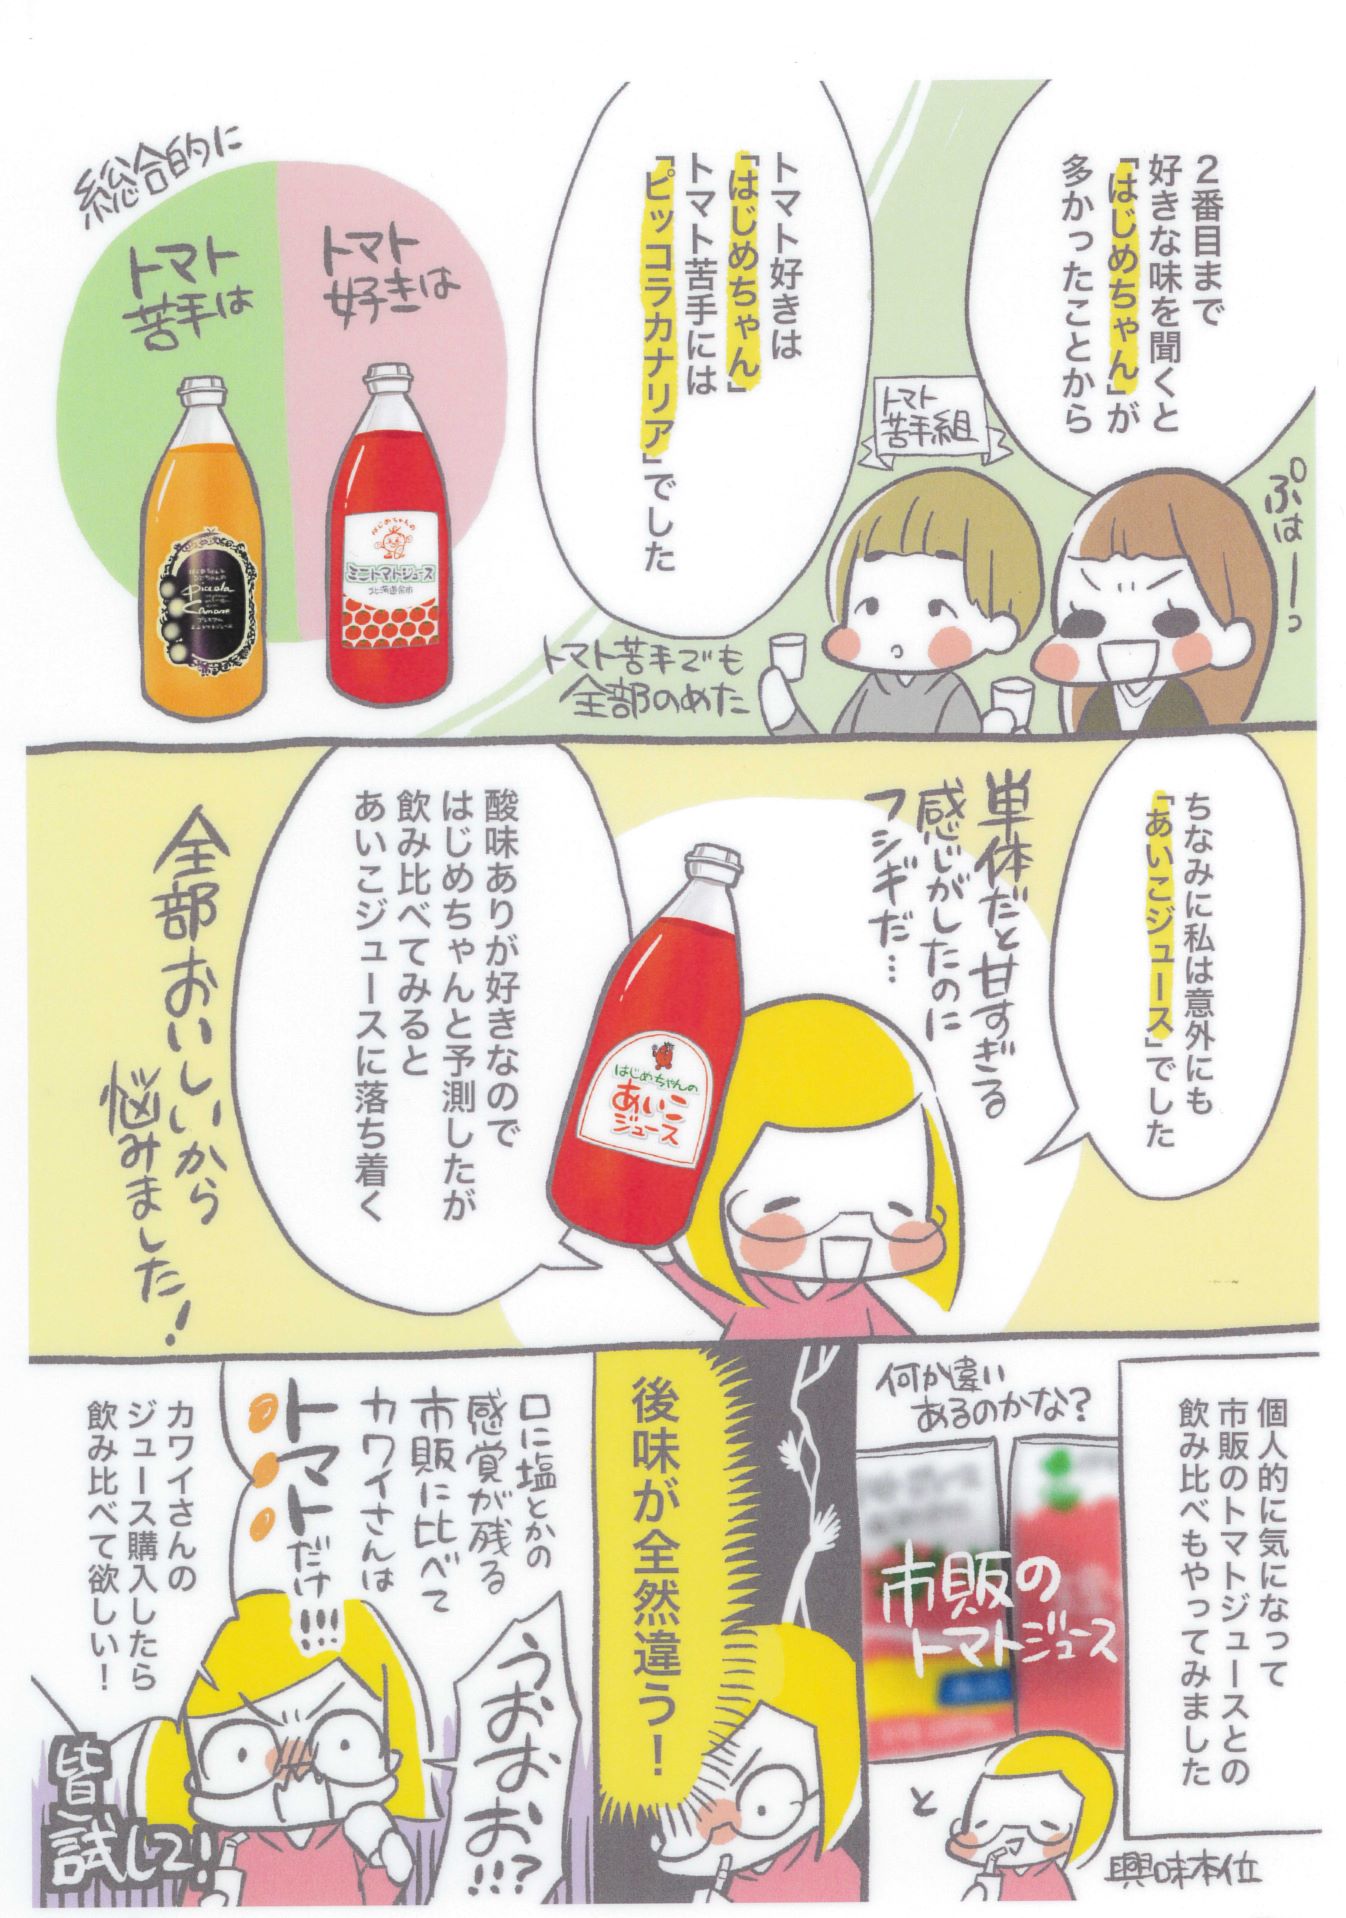 【余市産】ミニトマトジュース「はじめちゃんのあいこジュース」【アイコ】3本_Y034-0030